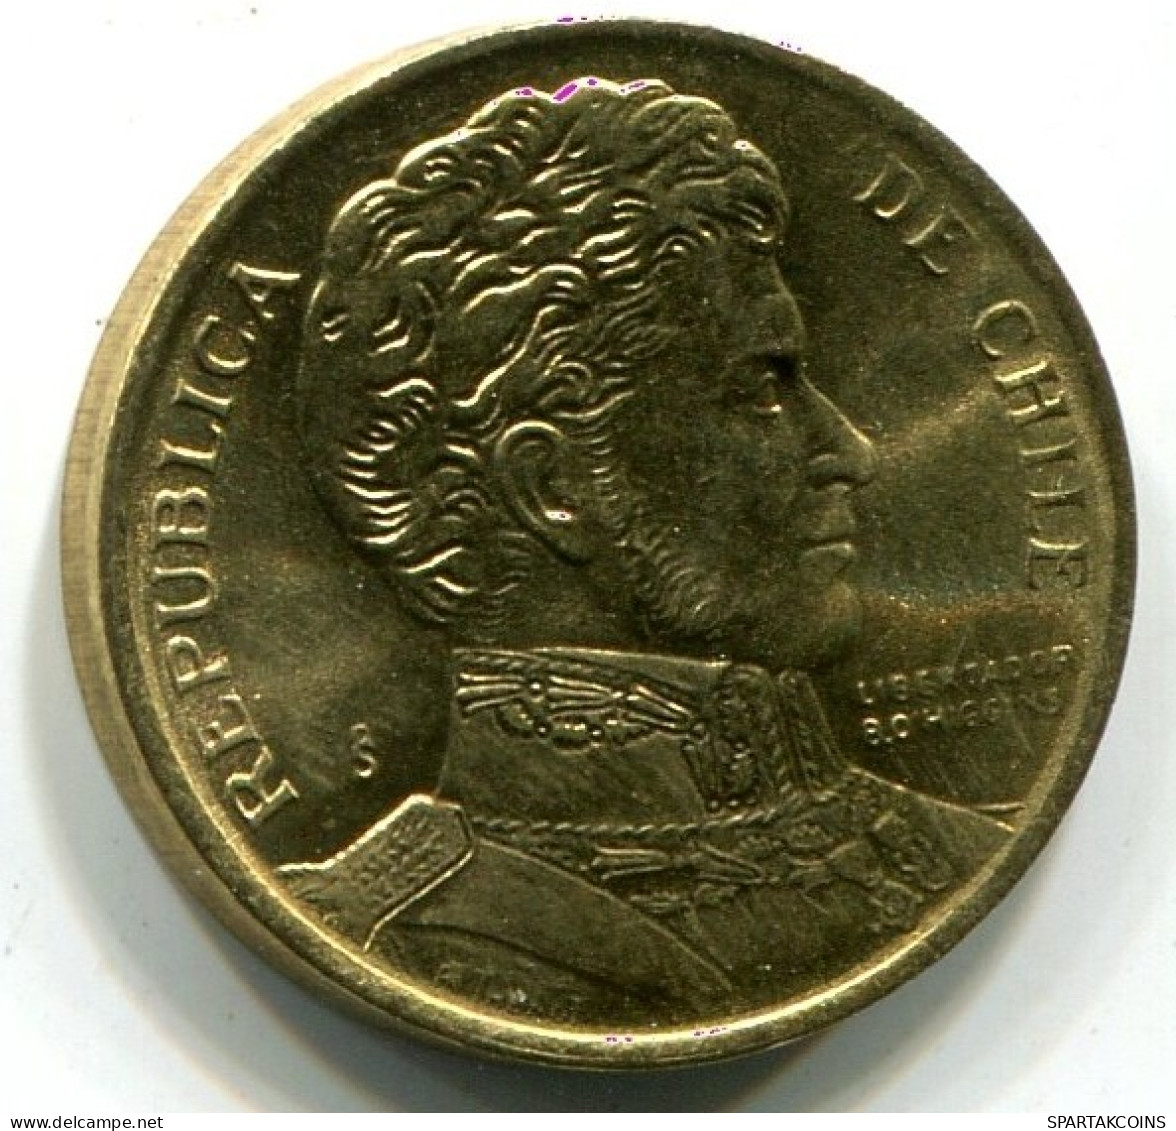 1 PESO 1990 CHILE UNC Moneda #W10969.E.A - Chile